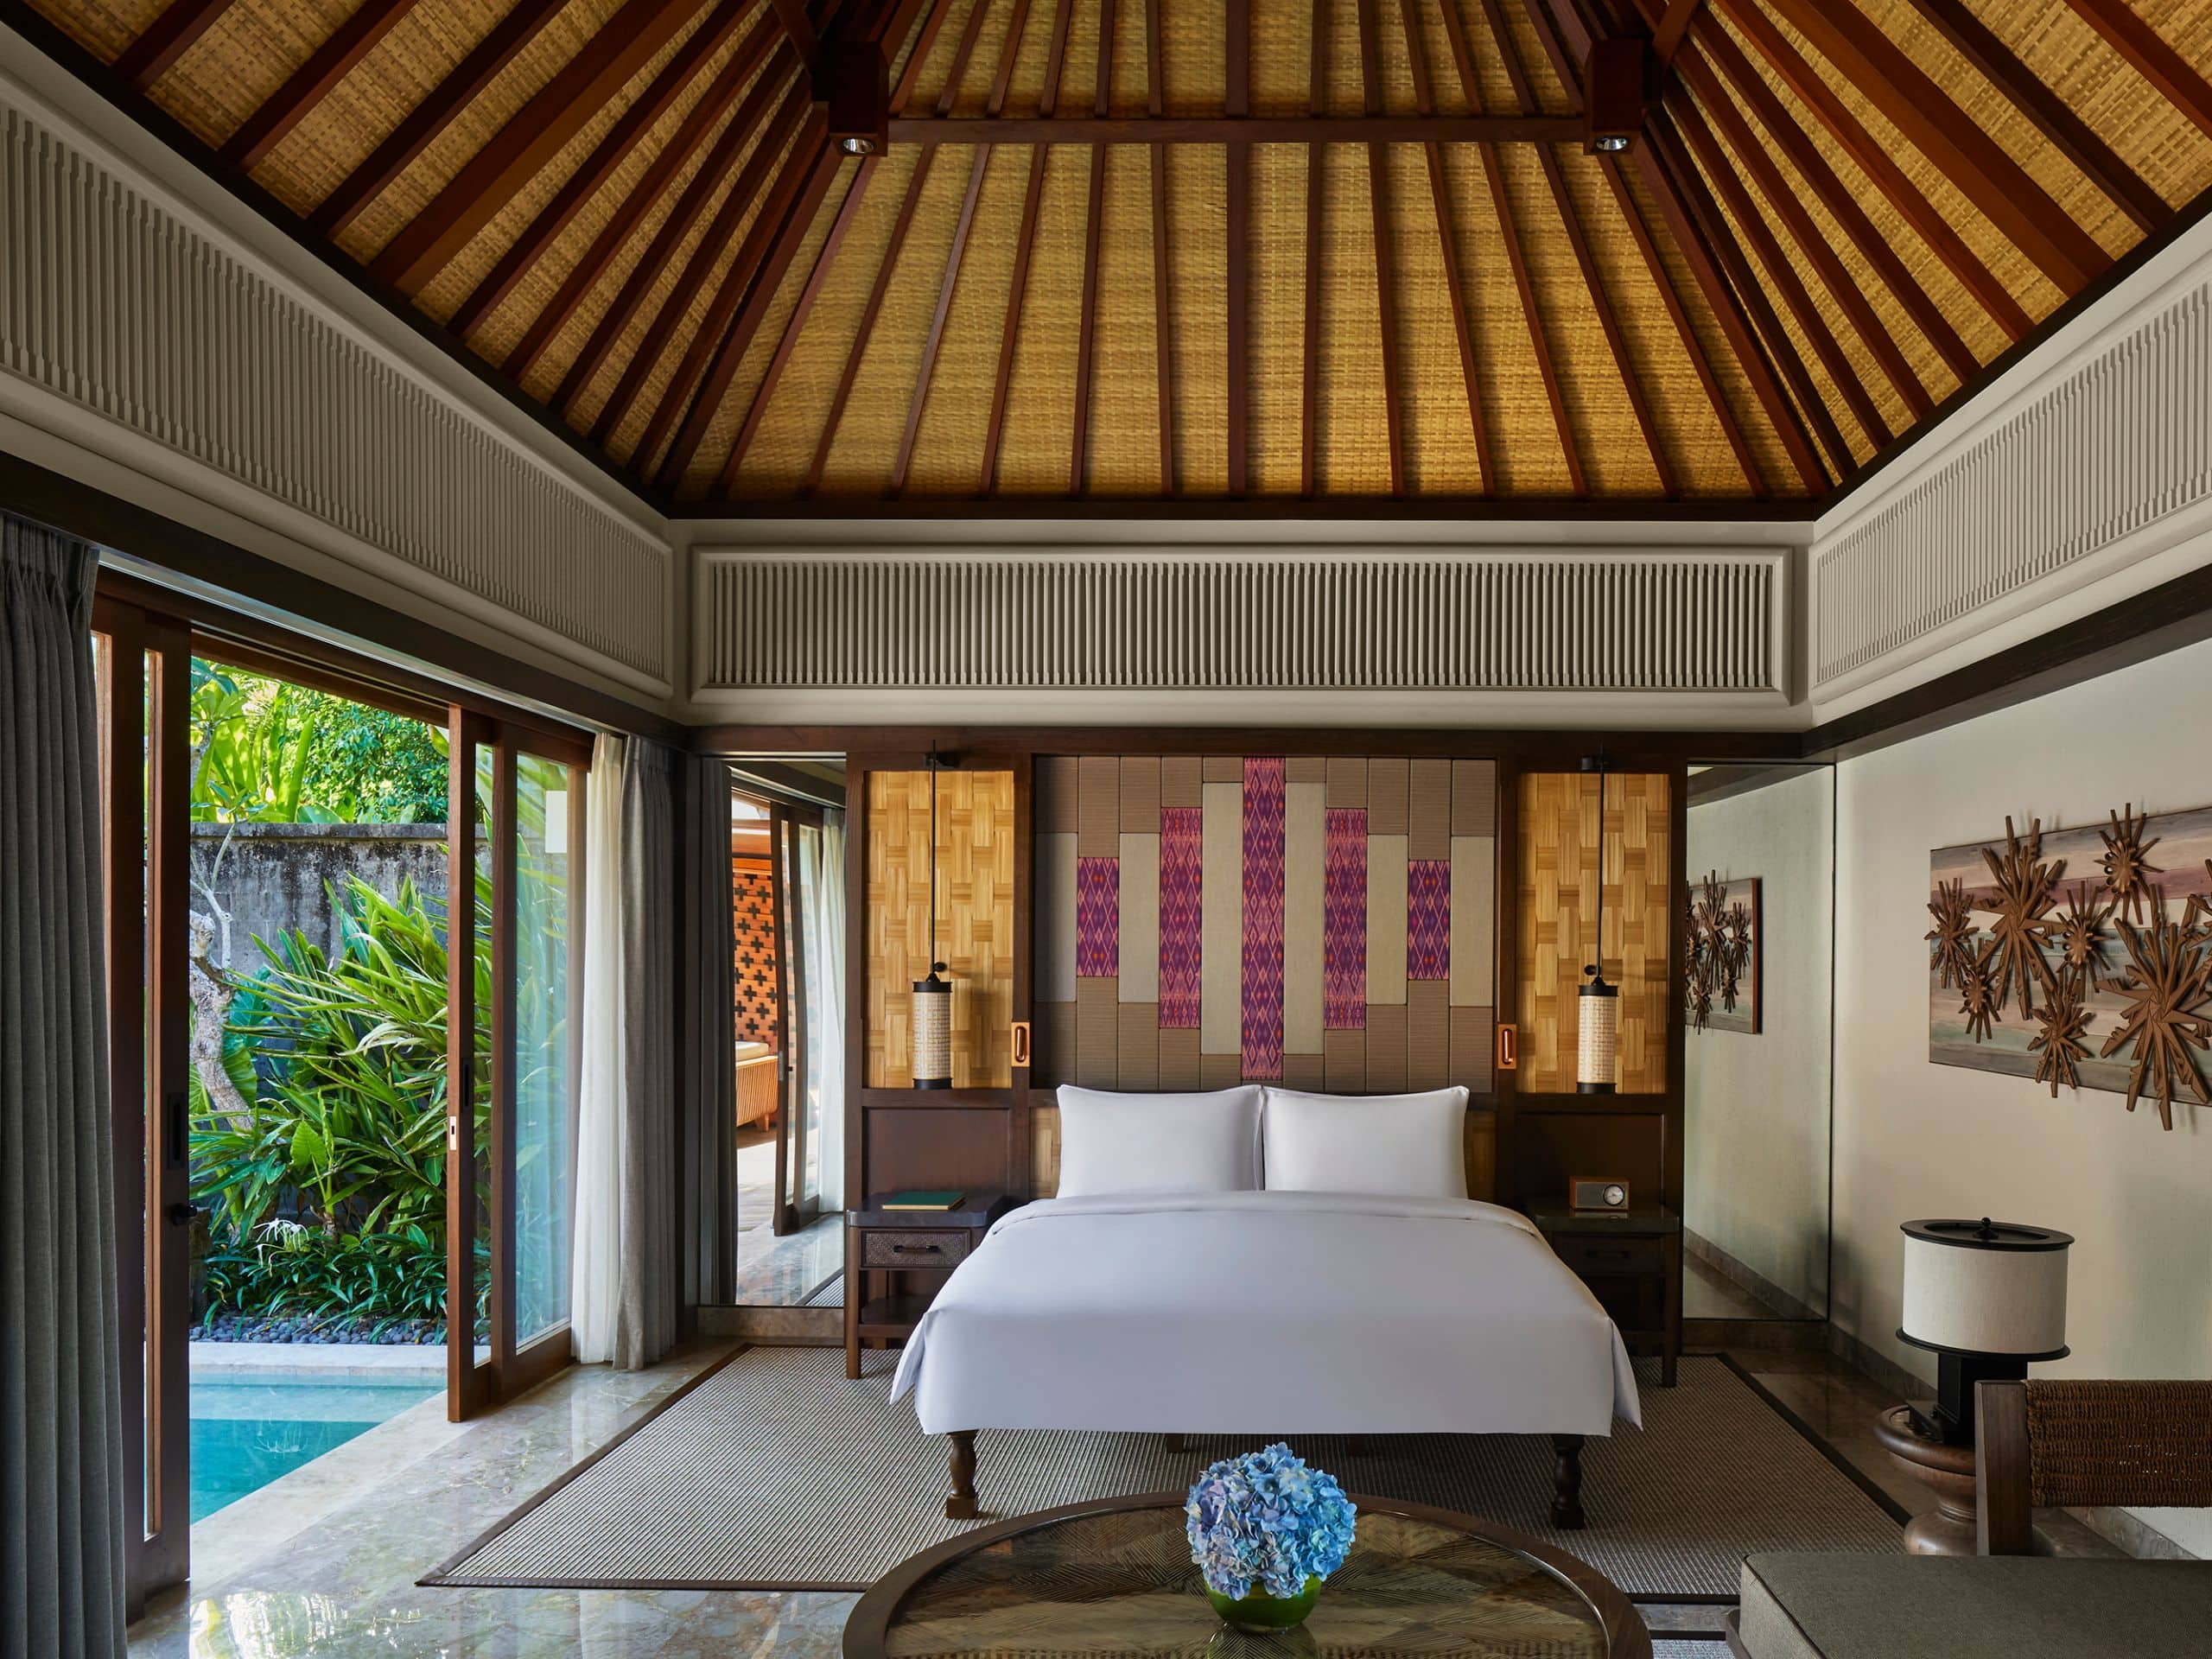 Andaz Bali King Garden Villa Overview